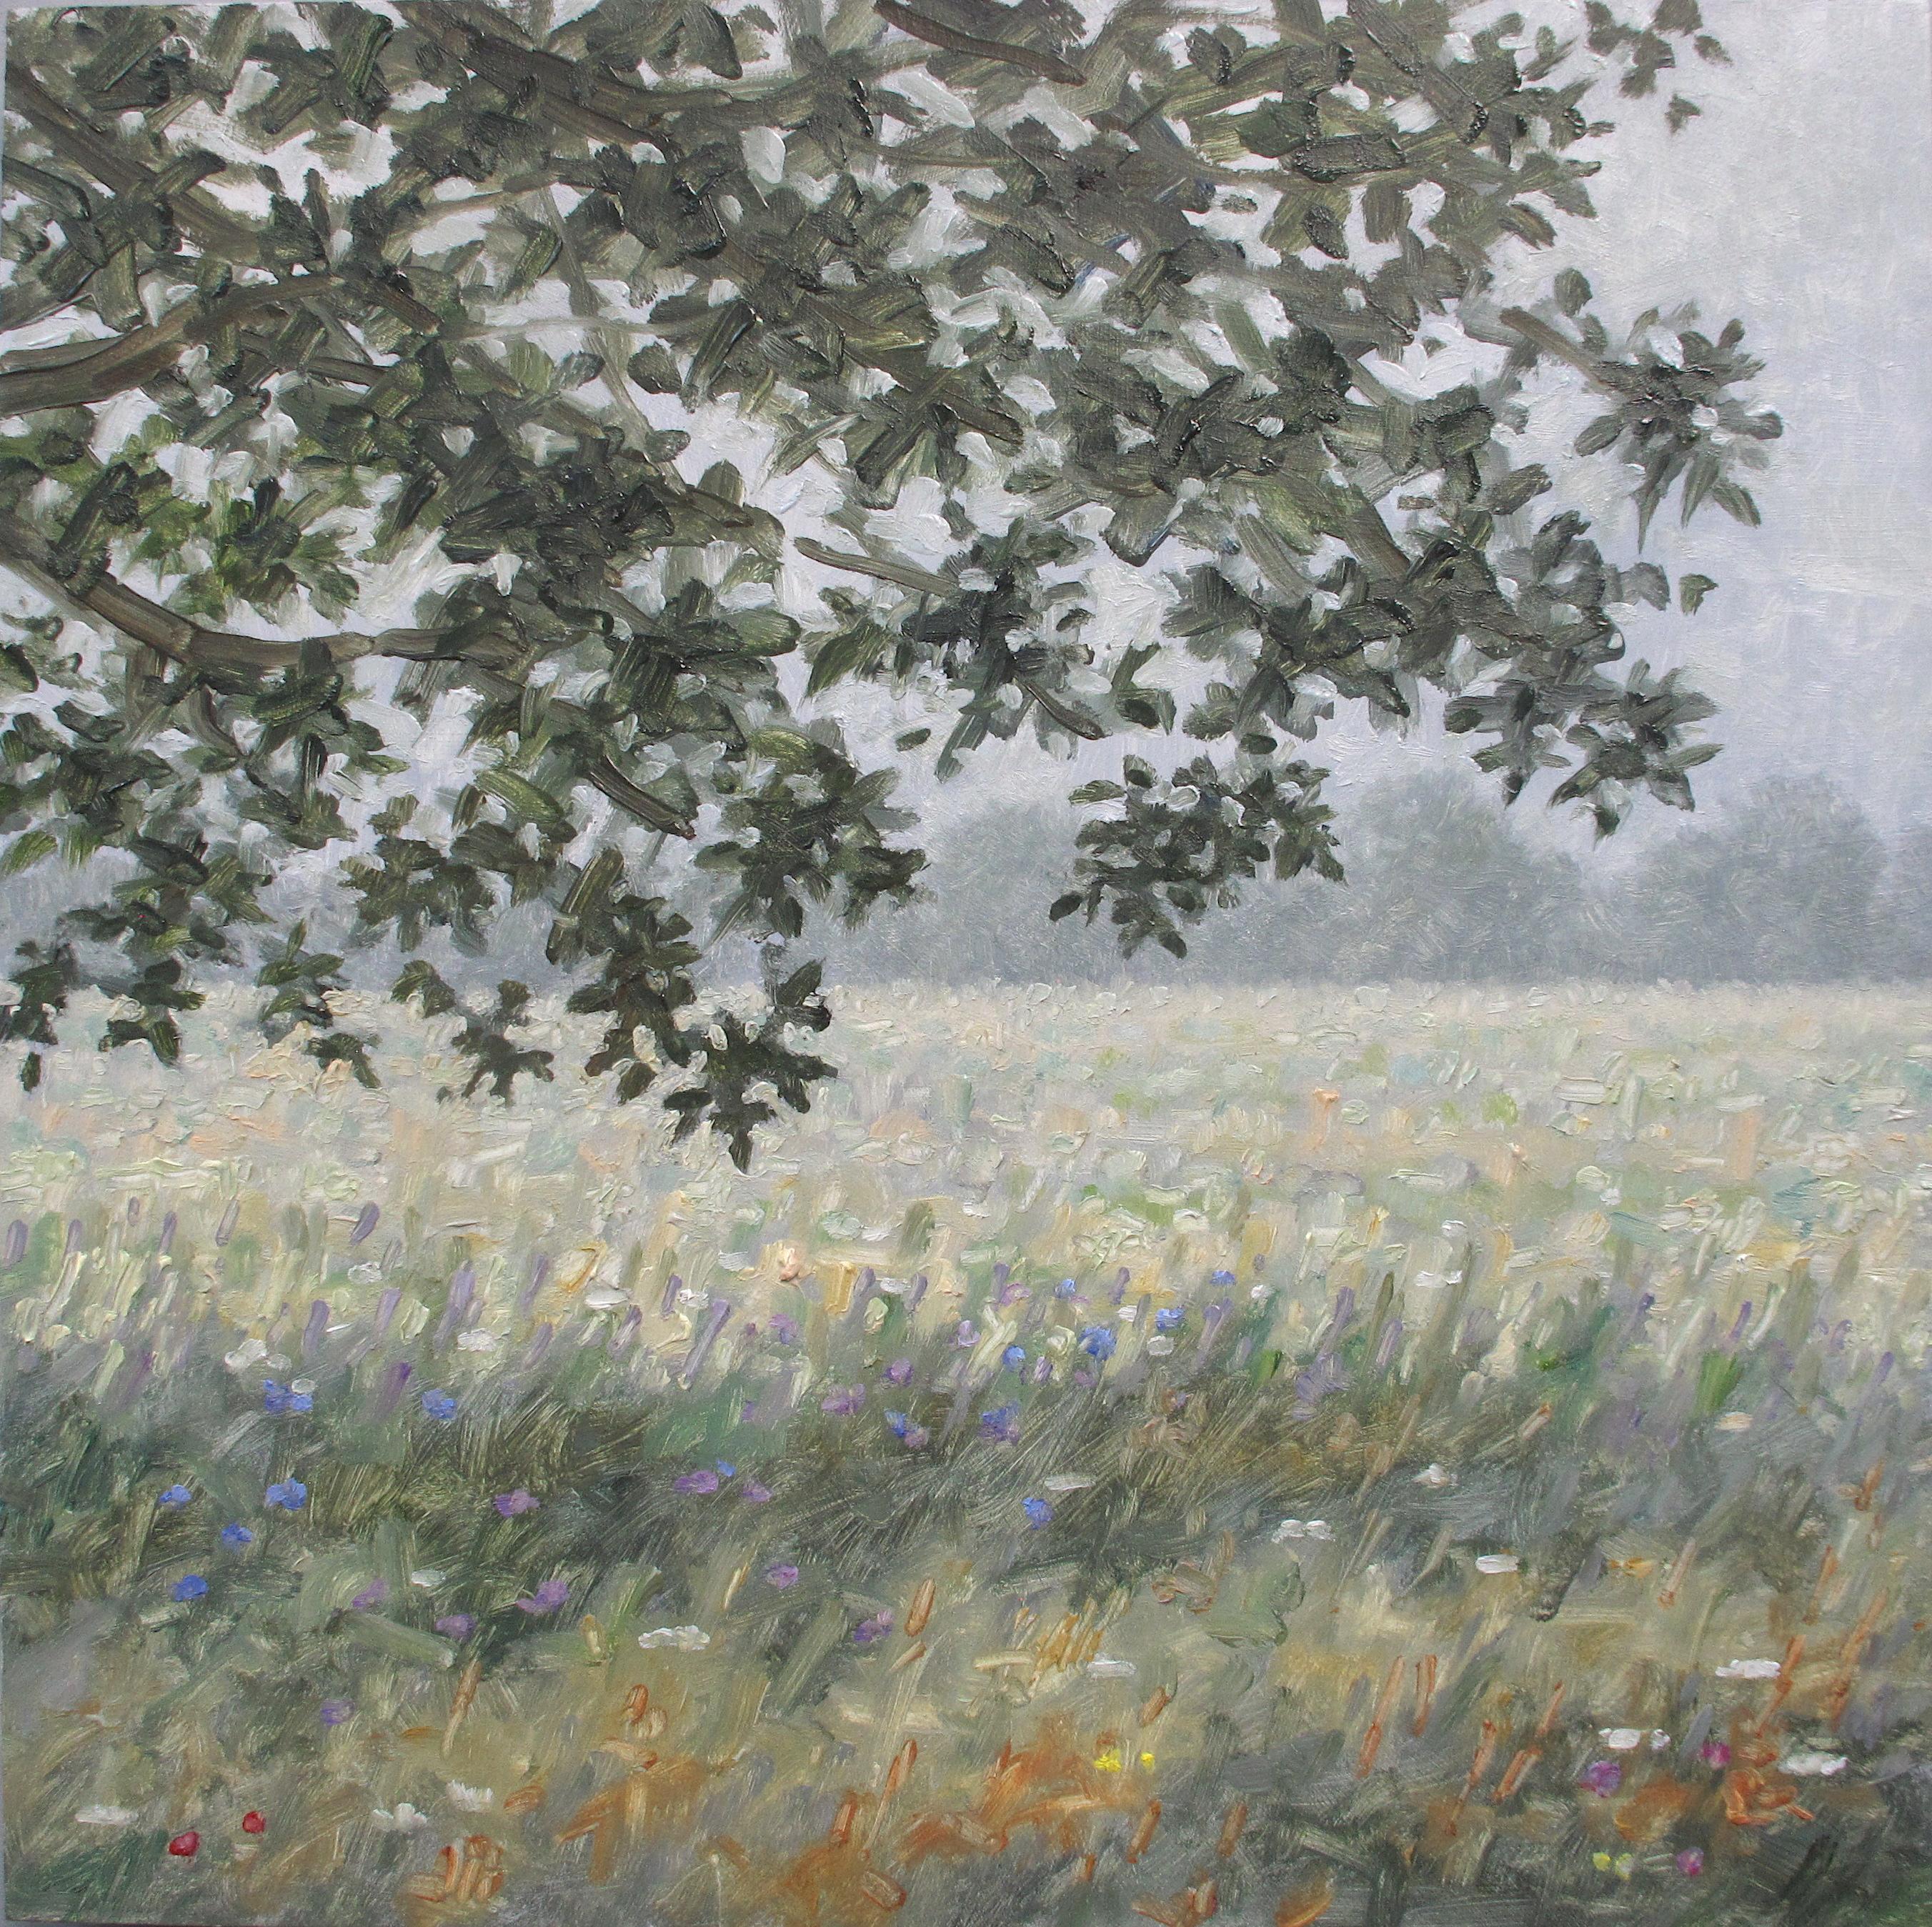 Landscape Painting Thomas Sarrantonio - Peinture de champ du 17 août 2020, paysage, fleurs dans un champ vert, arbres, fleurs